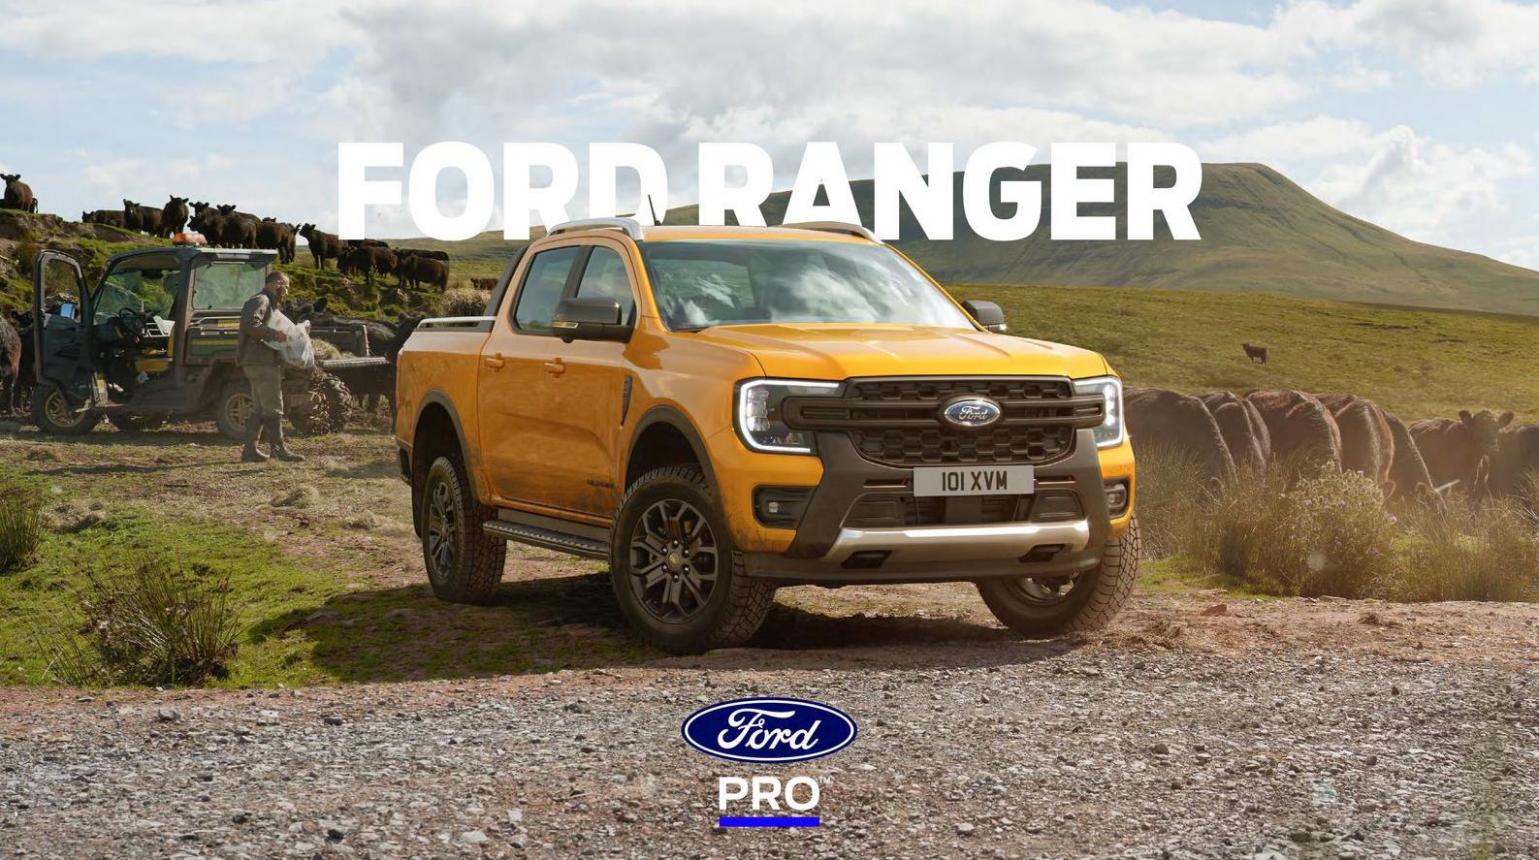 FORD RANGER. Ford (2025-03-26-2025-03-26)